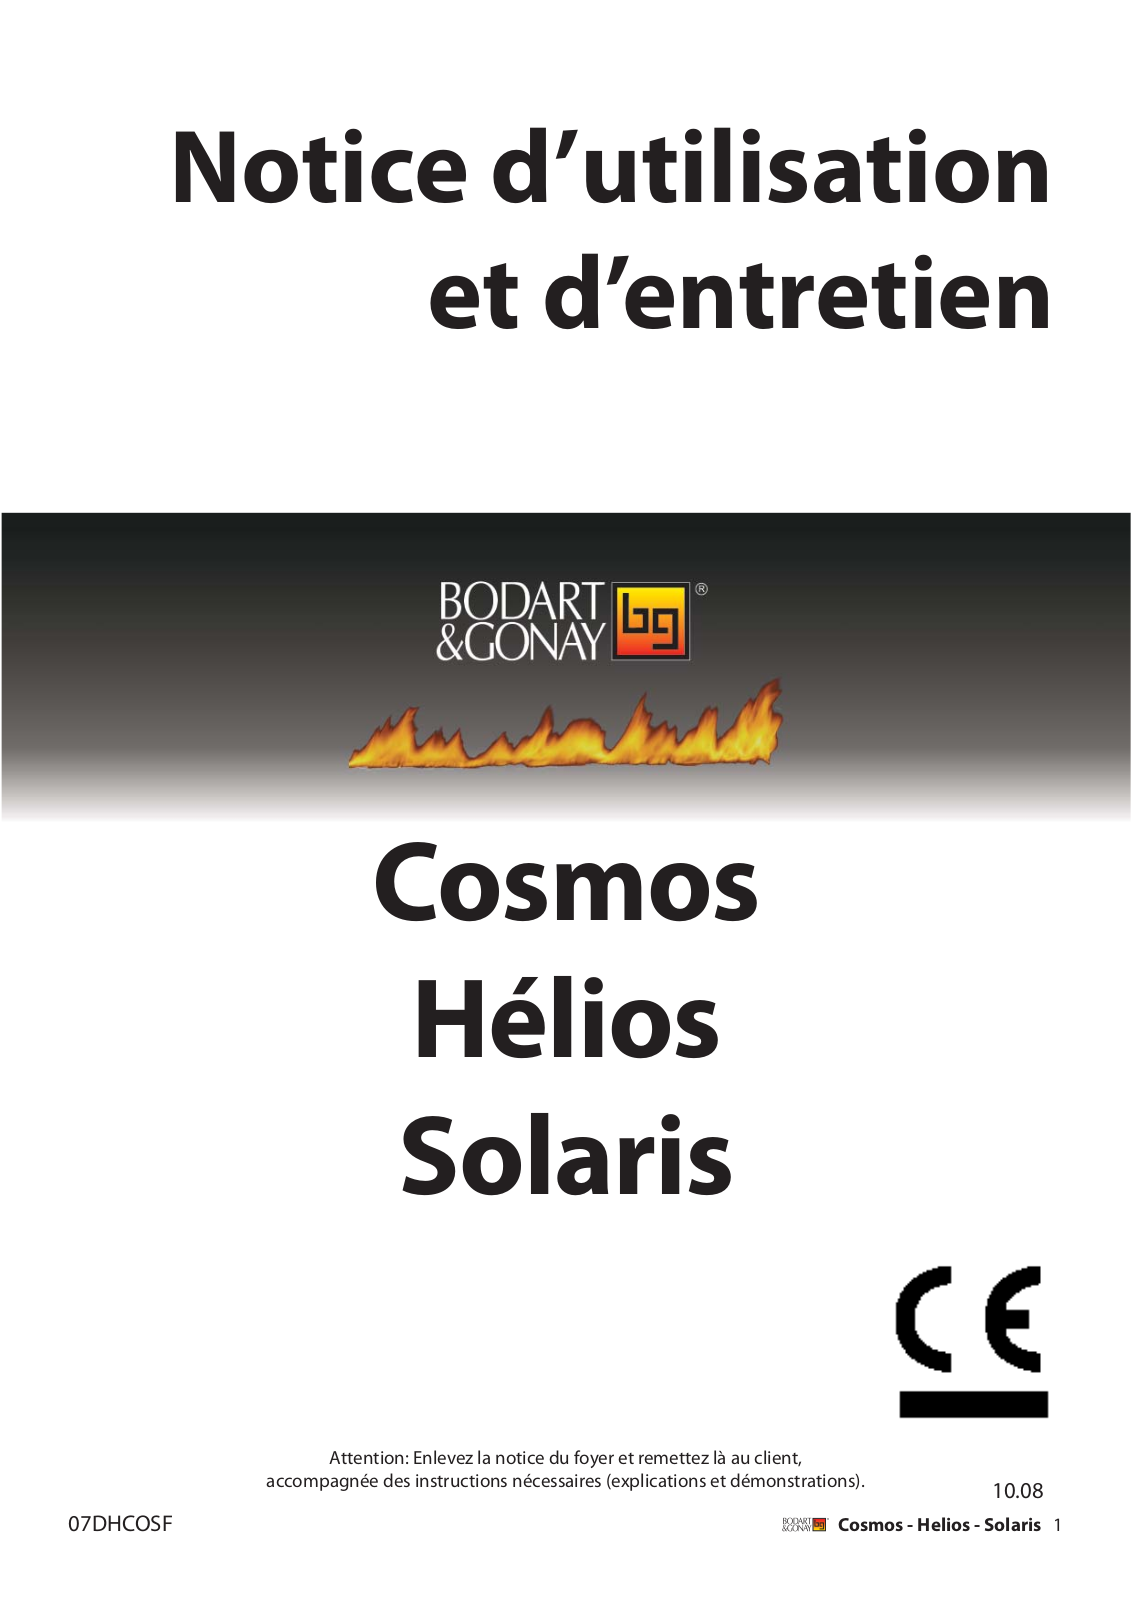 BODART & GONAY COSMOS, HÉLIOS, SOLARIS User Manual